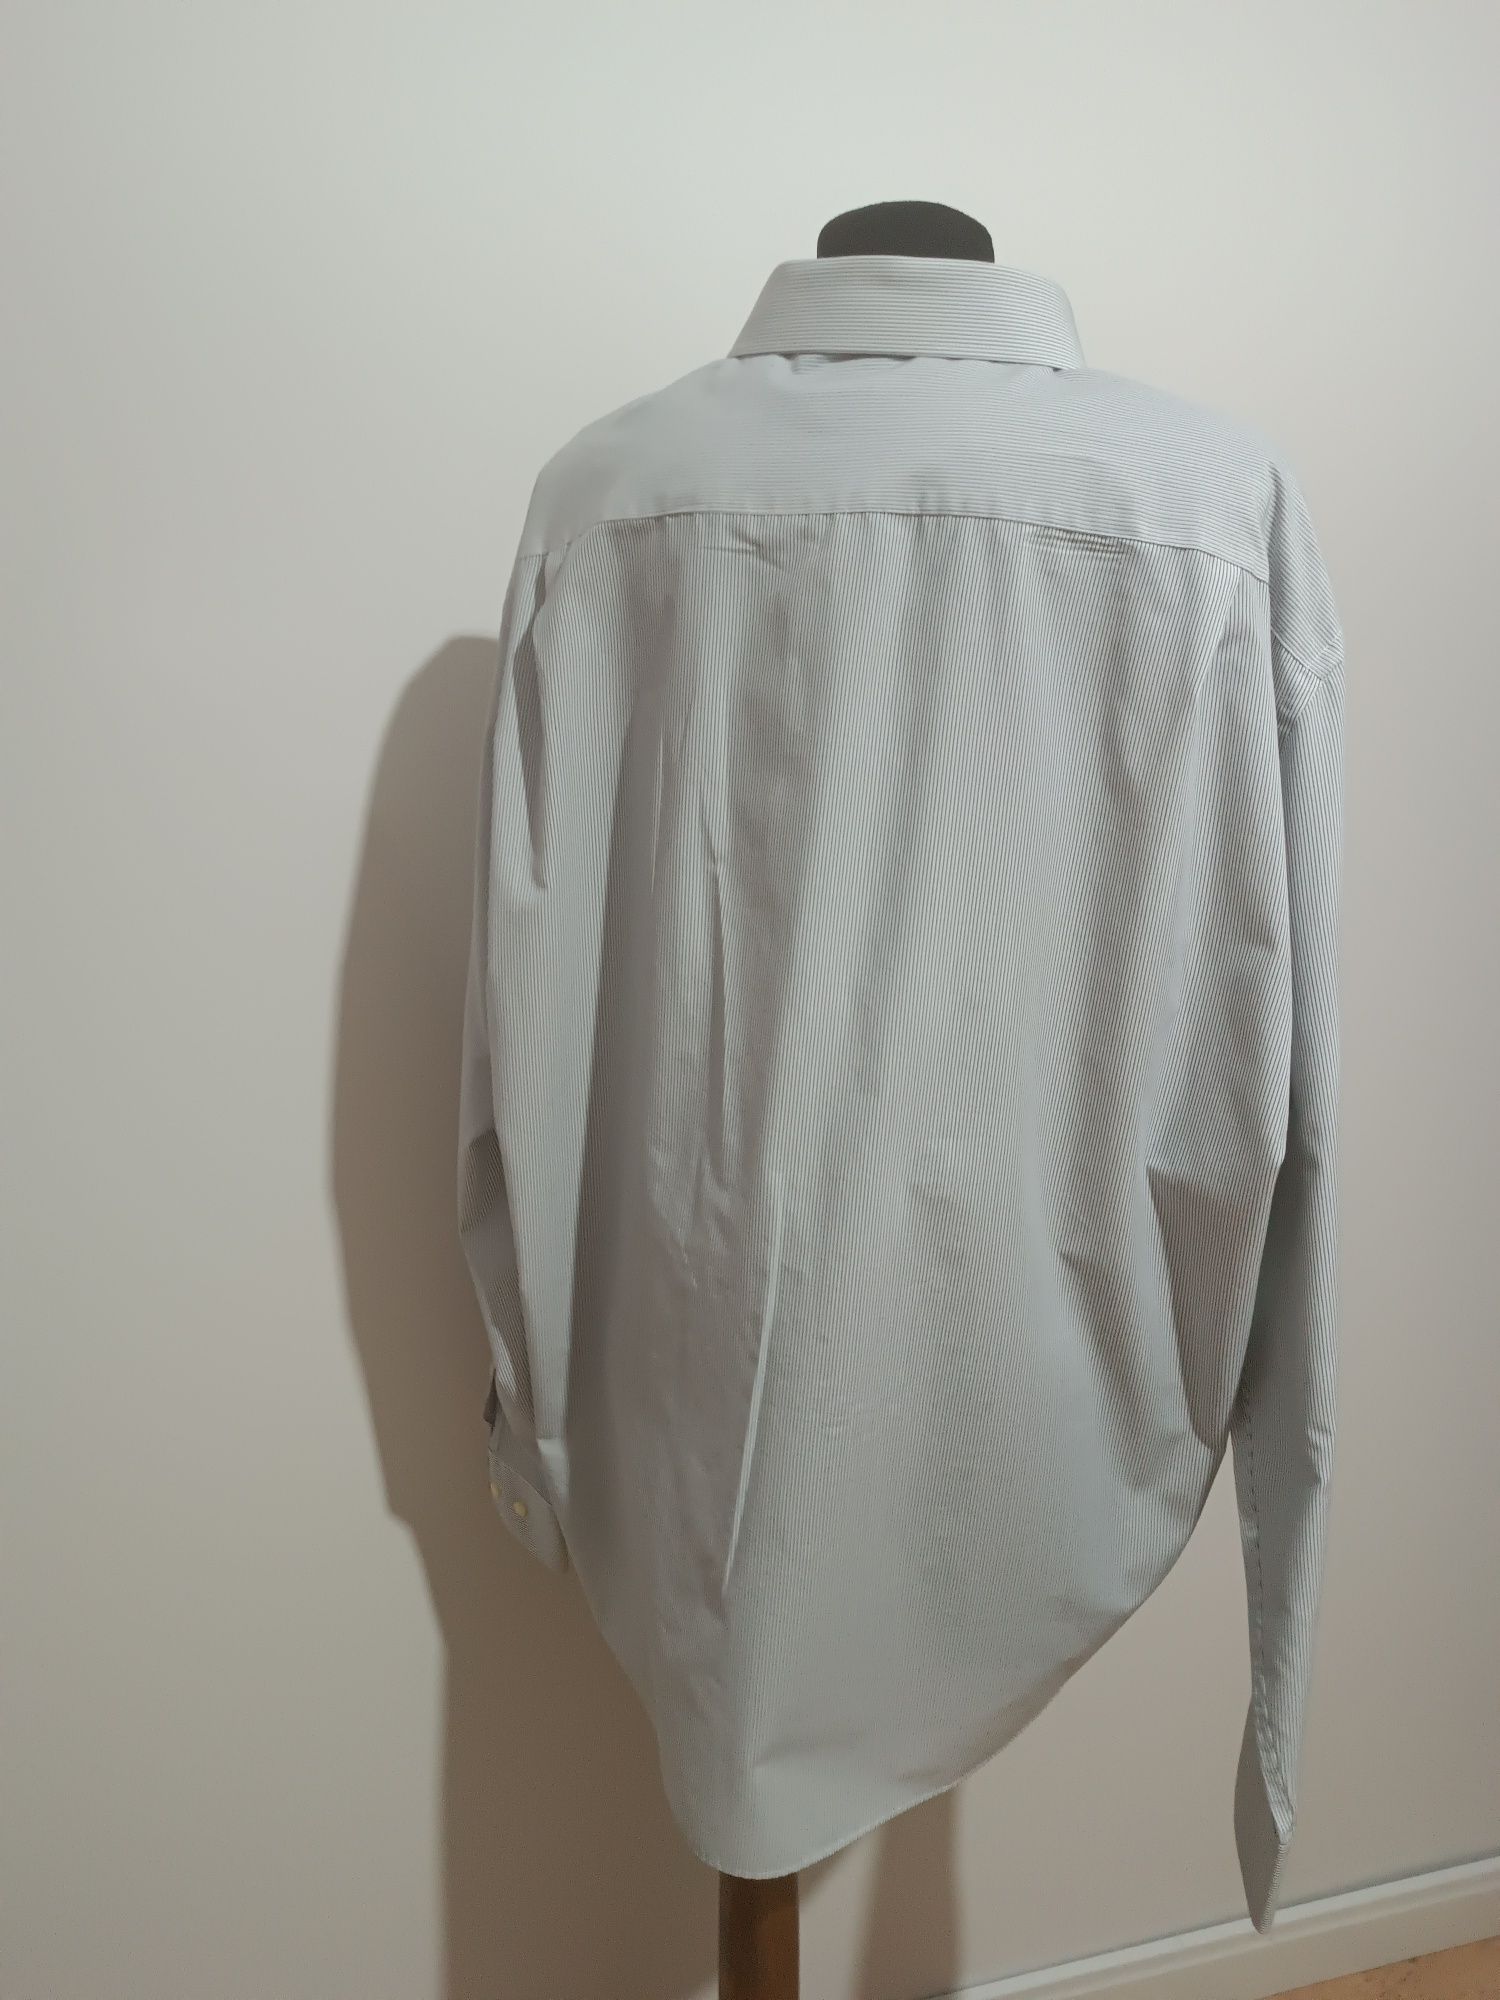 Męska koszula Tailor& Cutter regular fit używana bdb rozmiar 47/19 3XL